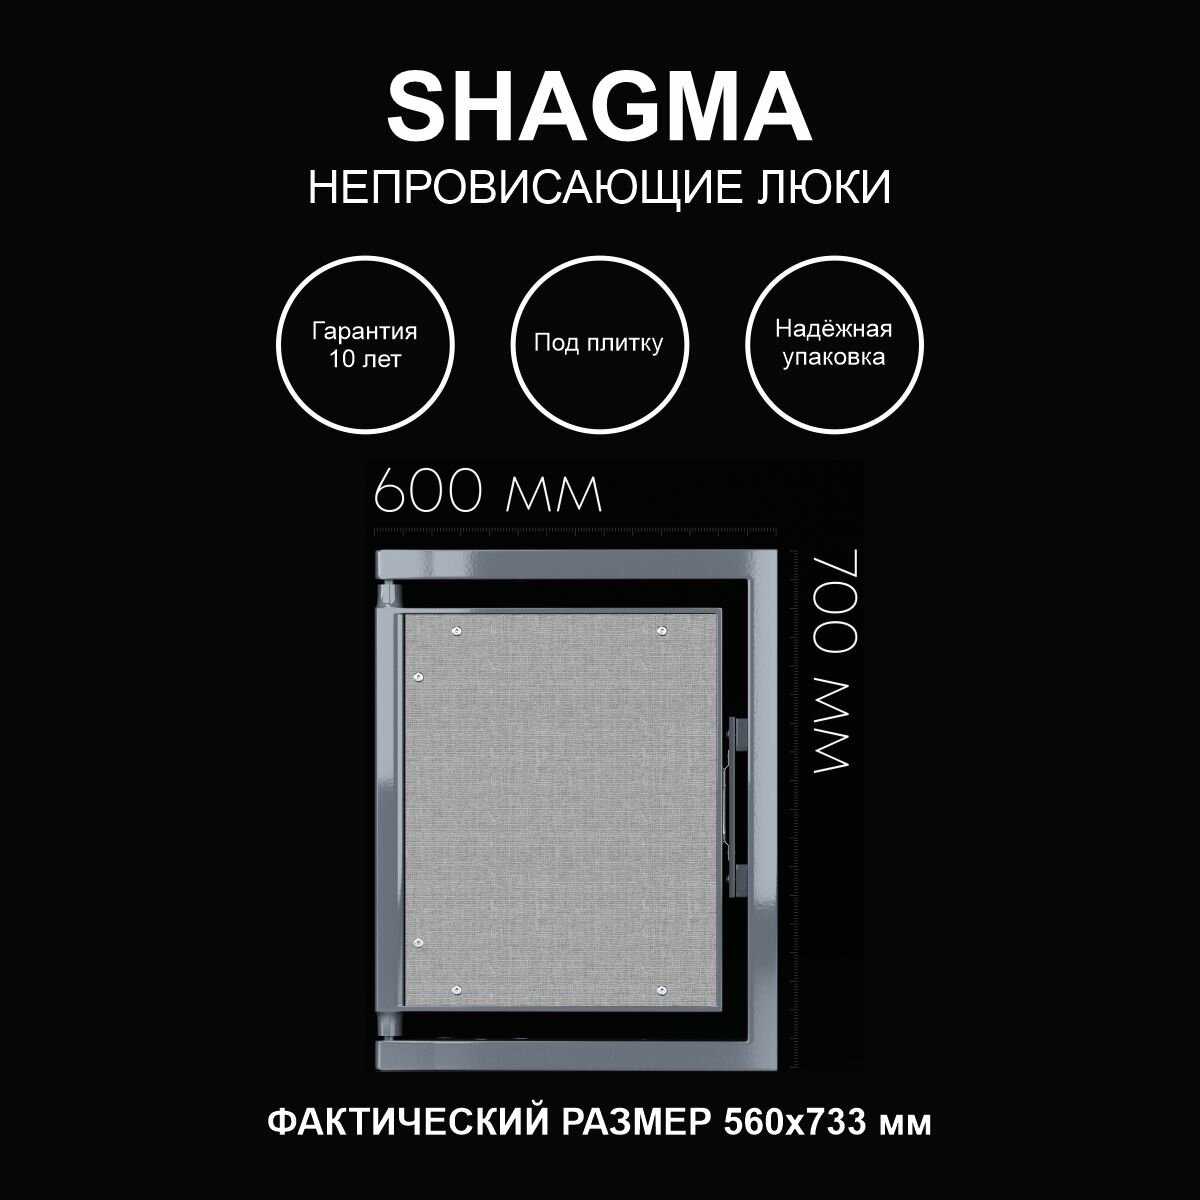 Люк ревизионный под плитку 600х700 мм одностворчатый сантехнический настенный фактический размер 560(ширина) х 733(высота) мм SHAGMA